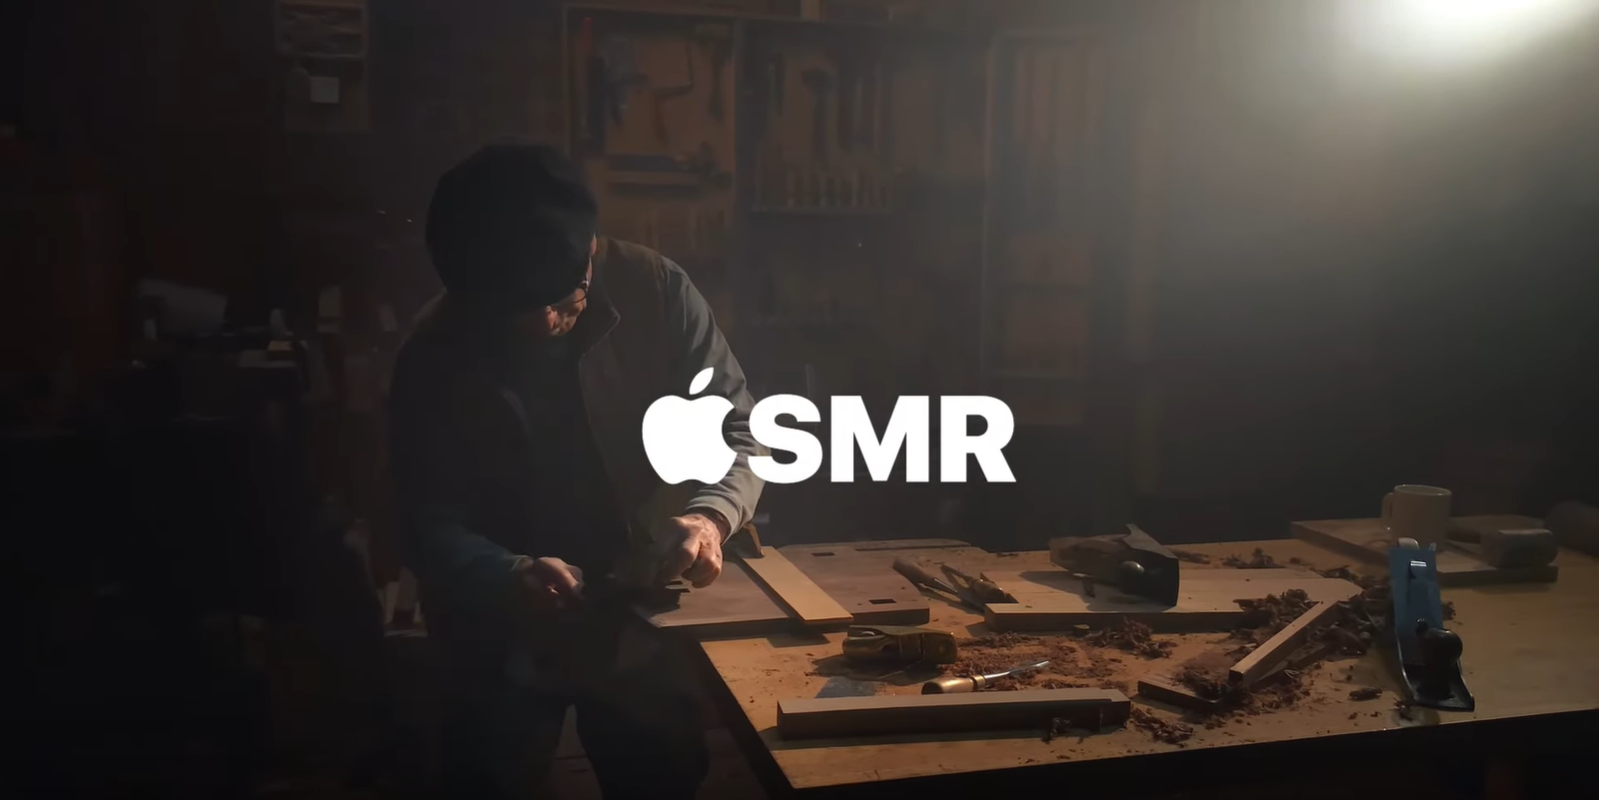 Apple tung ra 4 video nội dung ASMR trên kênh Youtube của hãng